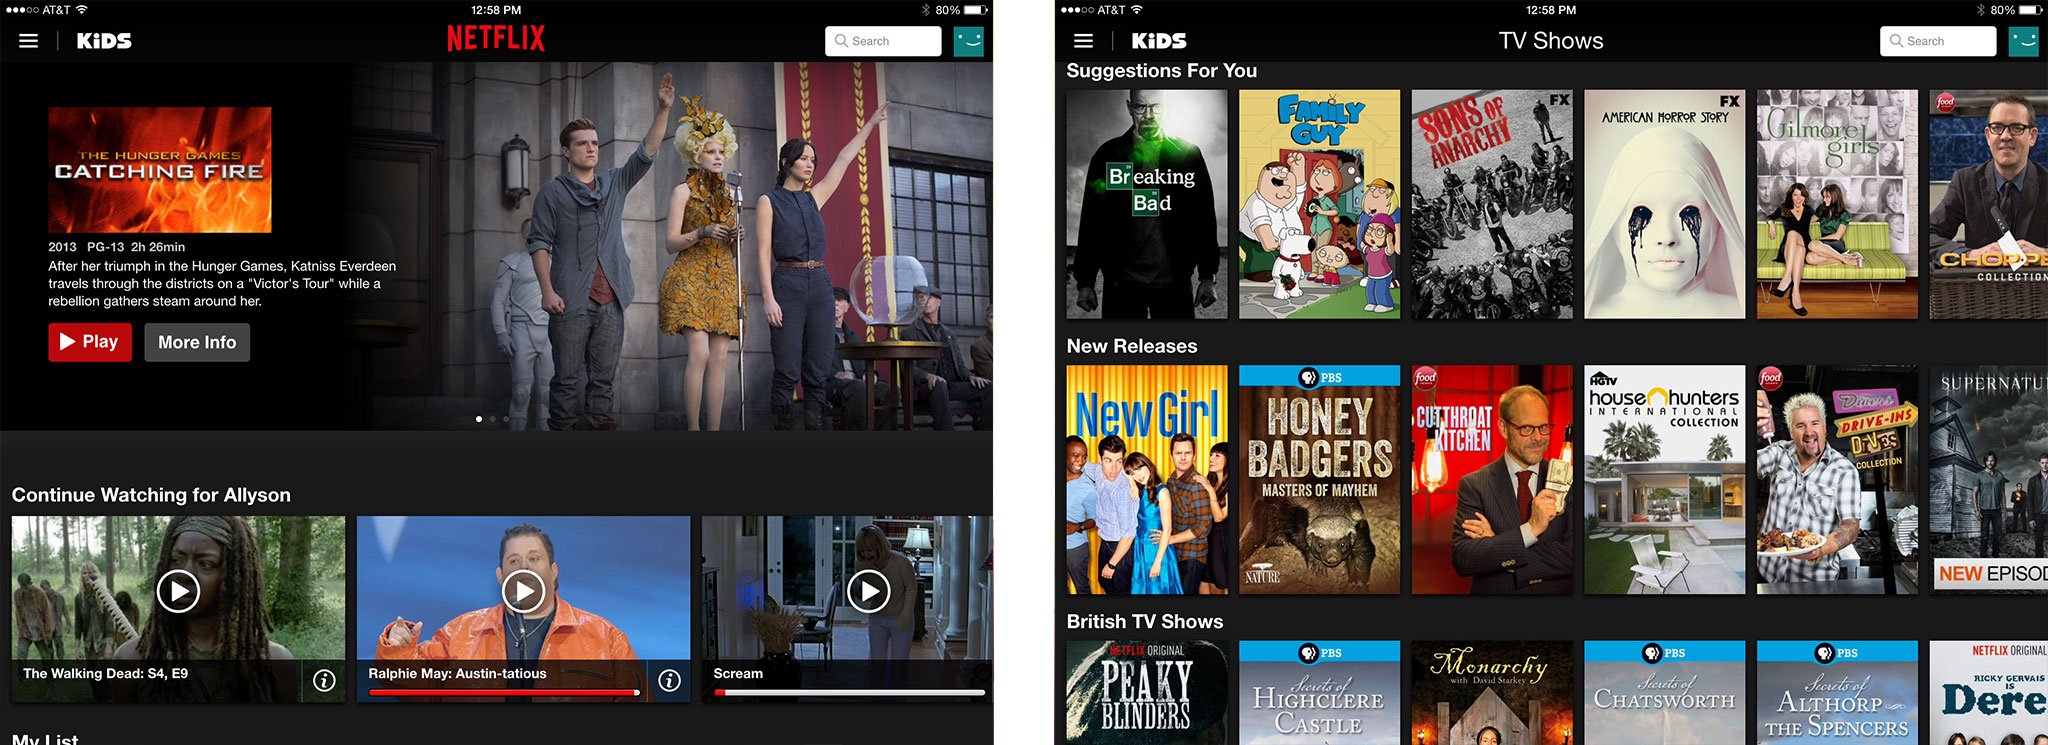 Best iPad apps for TV watchers: Netflix